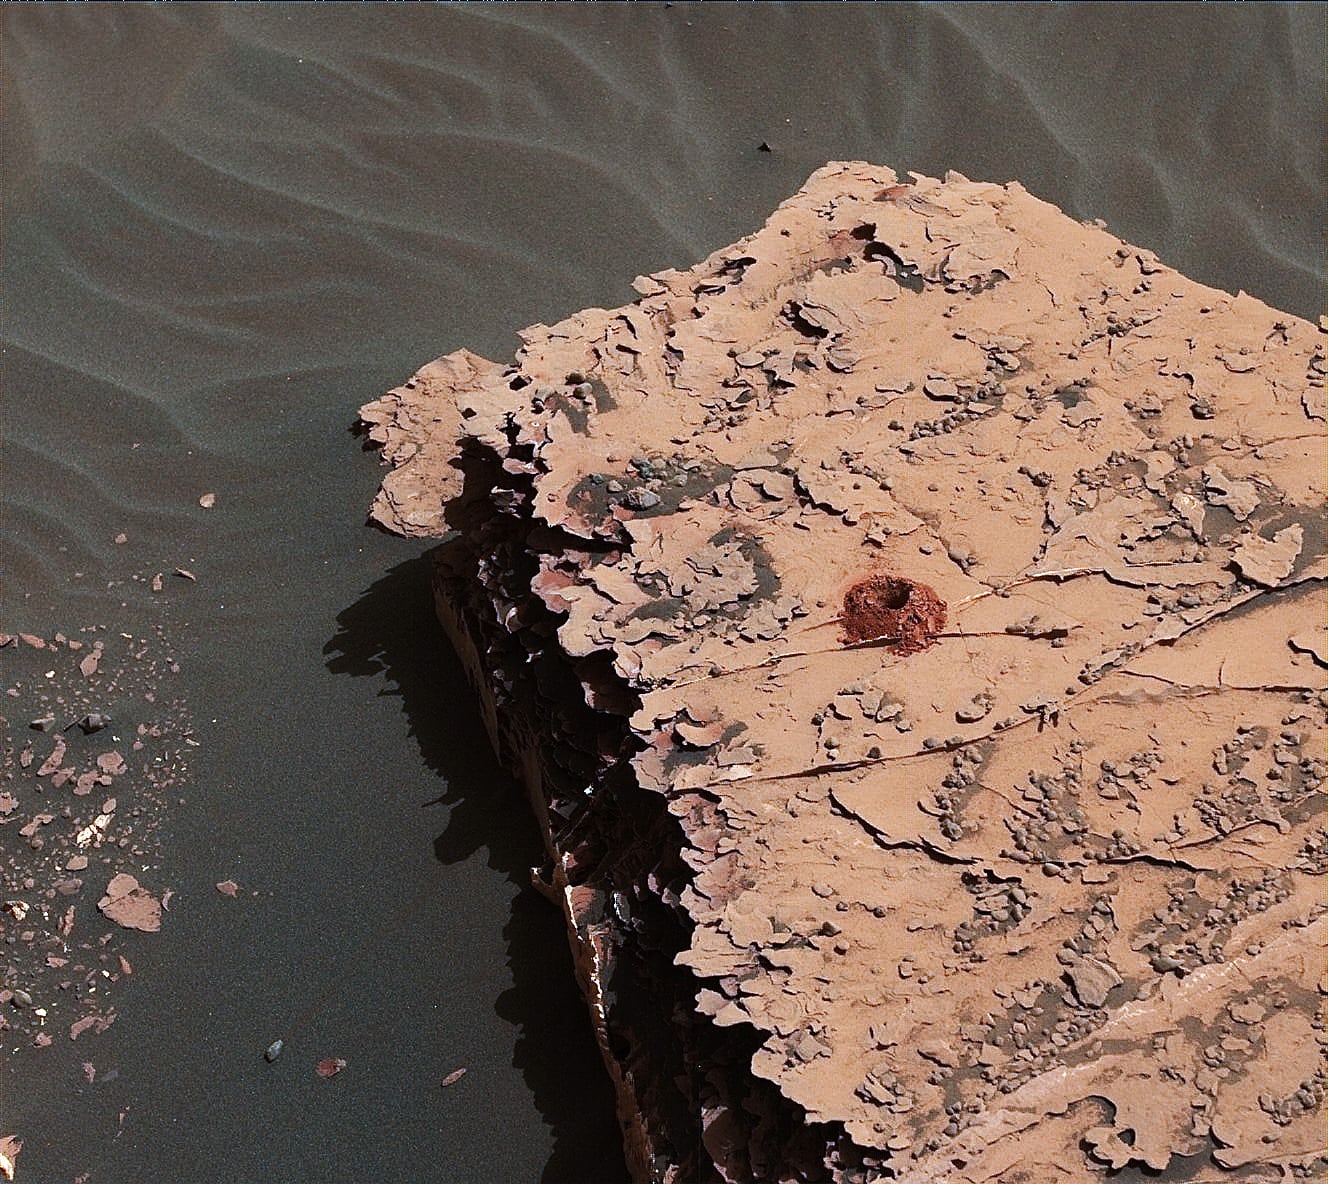 مركبات عضوية في المريخ تنعش الأمل بالعثور على حياة